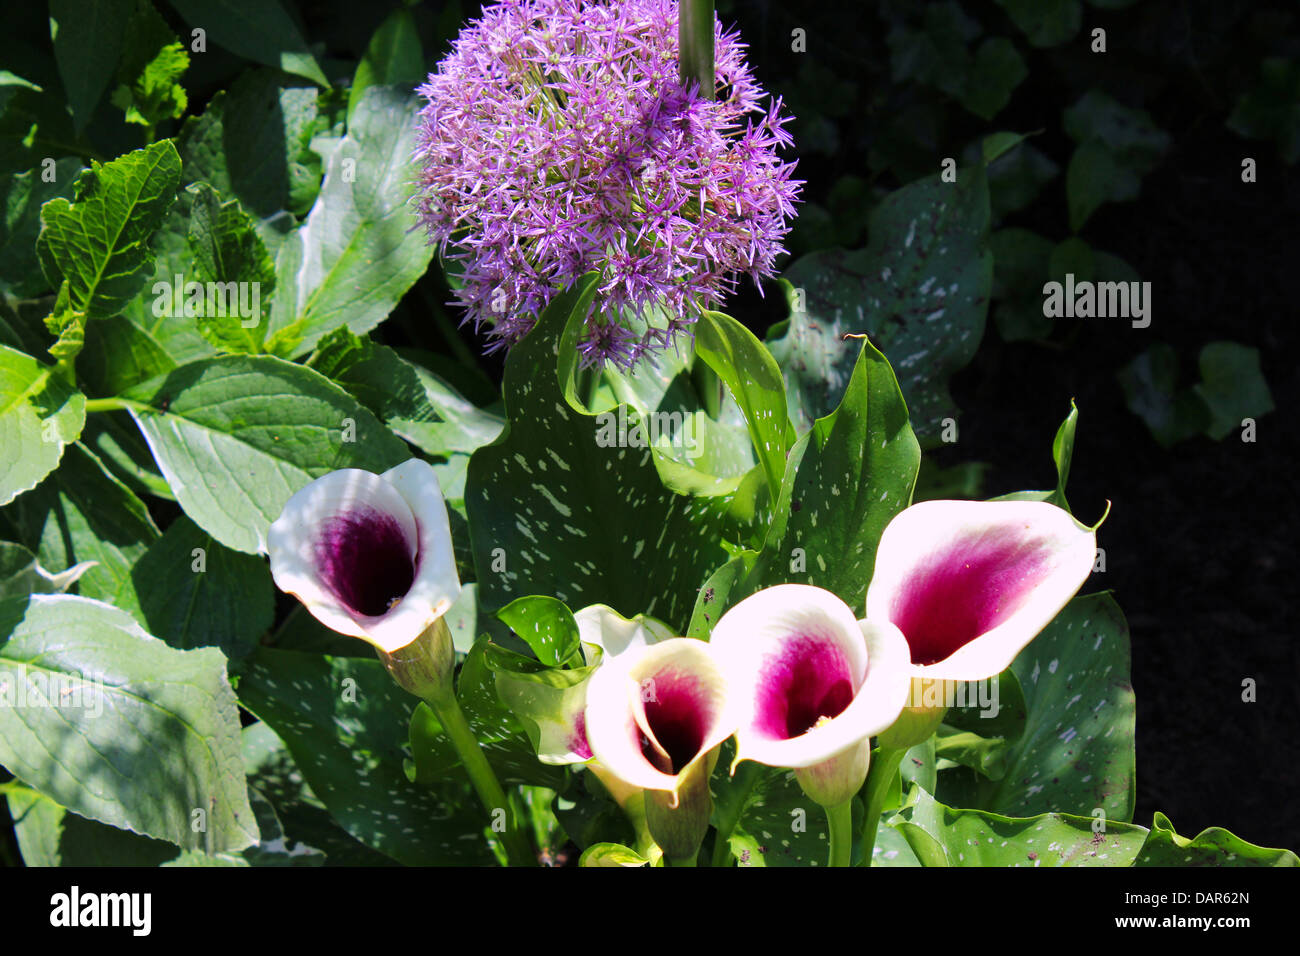 Der Globus Distel Blume kommt in lila und weiß. Die Calla Lilie ist eine mehrjährige Pflanze und wird auch Arum Lilie genannt. Stockfoto